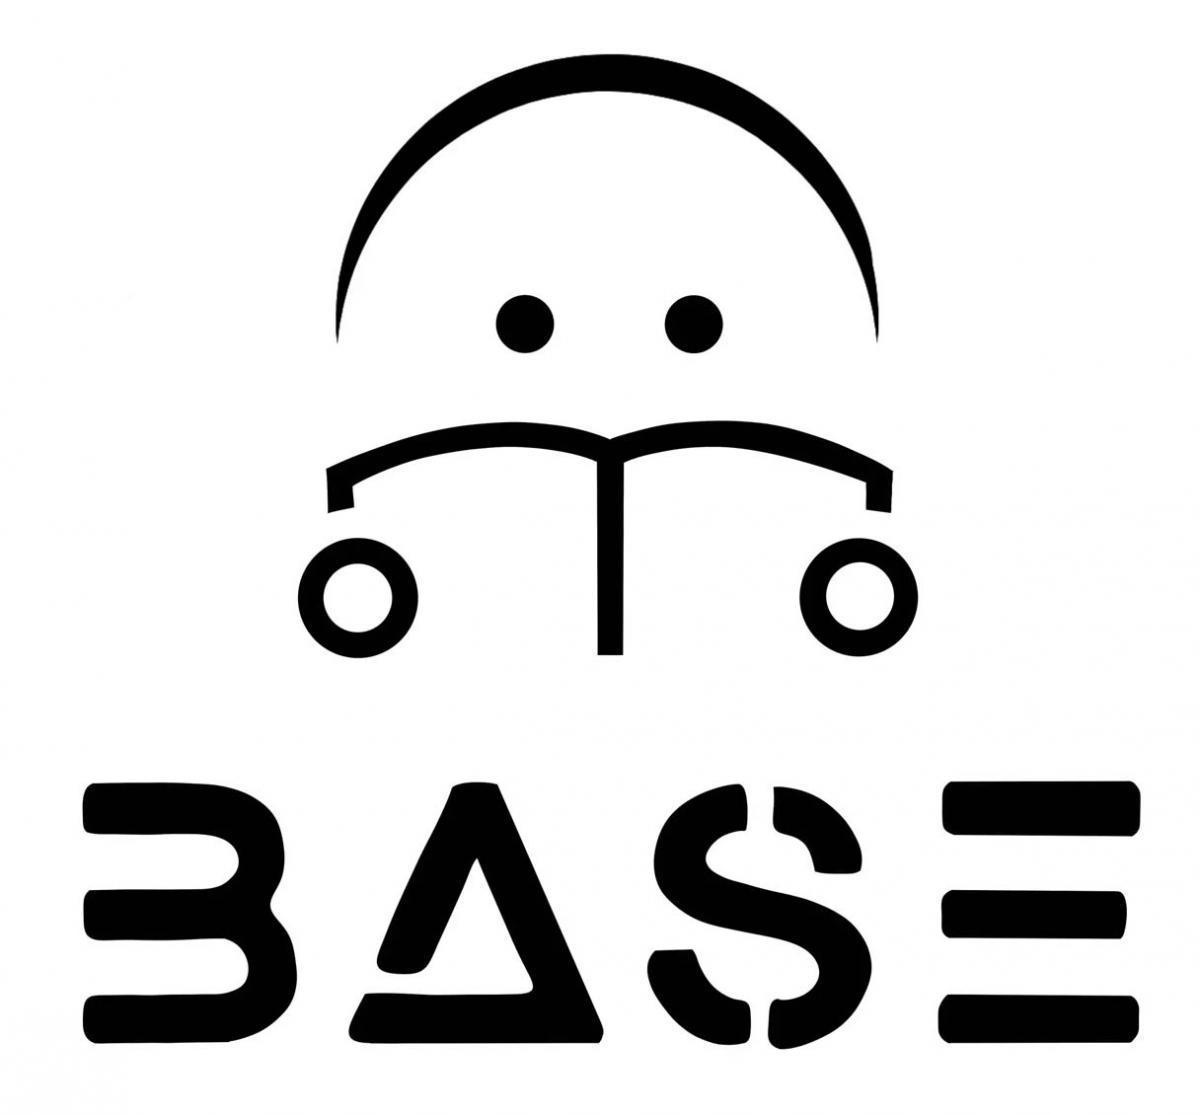 logo_base -